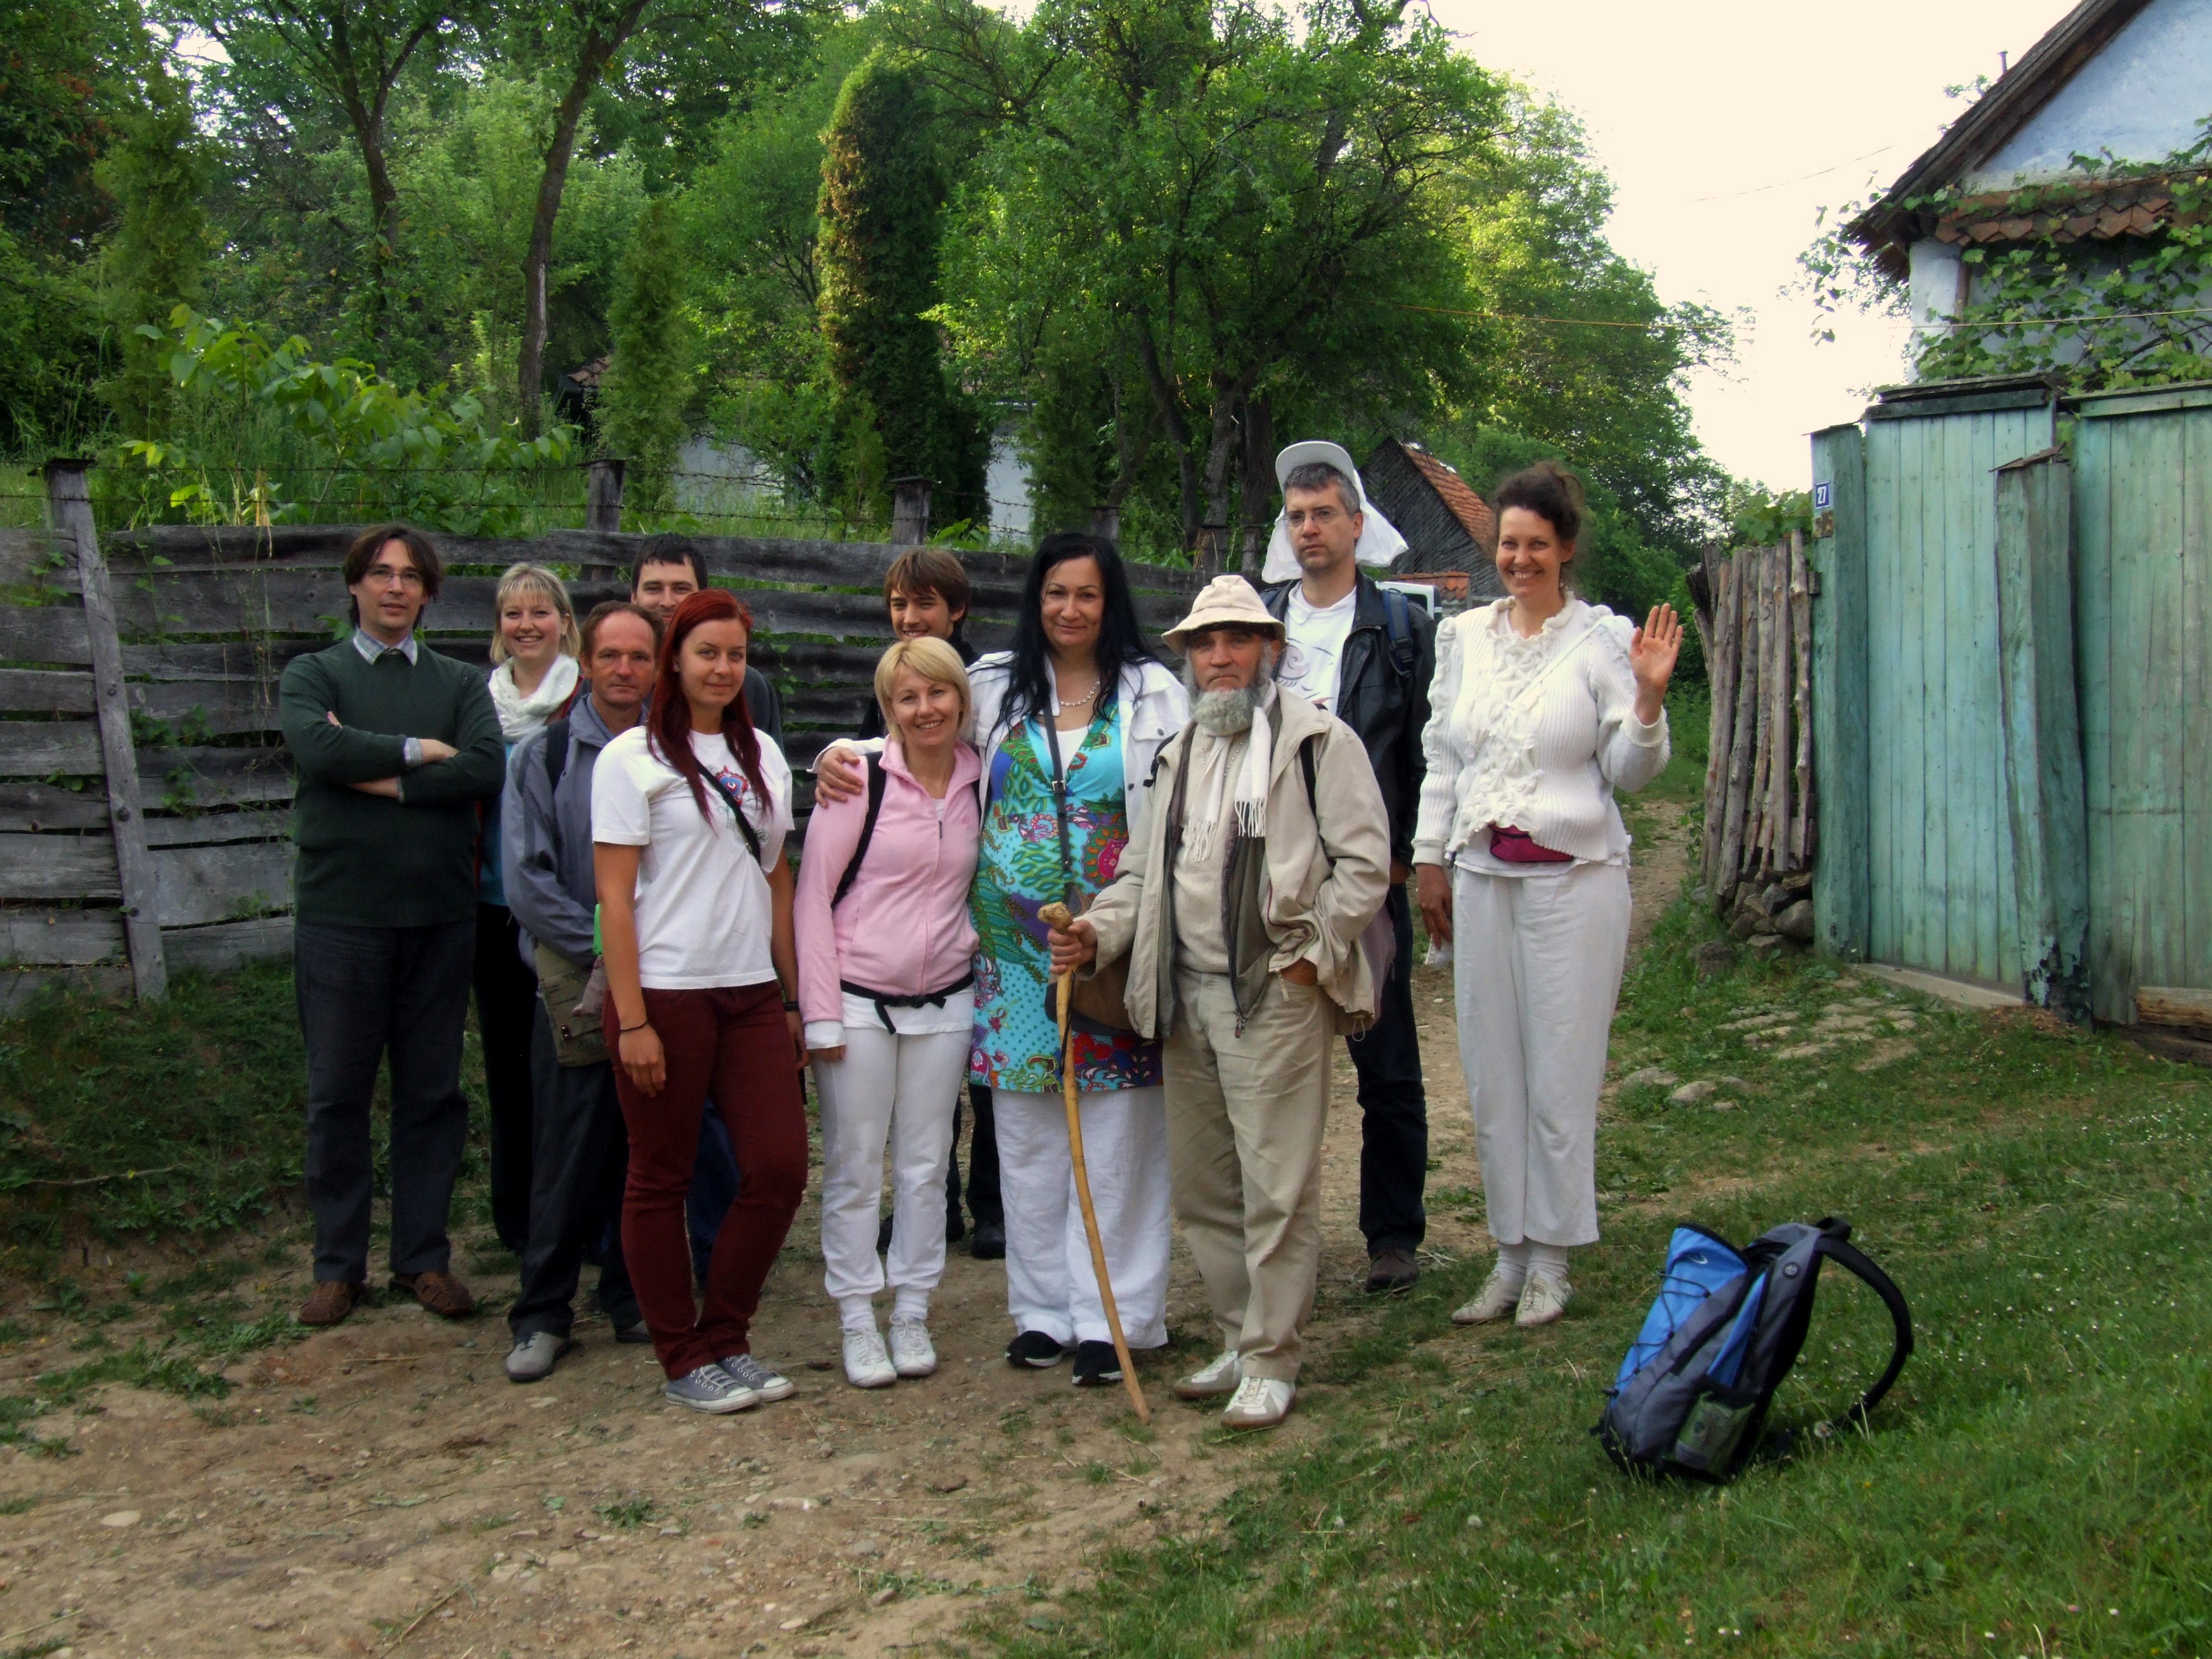 At a fieldwork in Transylvania: participant observation among a New Religius Movement 2011 [Terepmunka Erdélyben egy vallási mozgalom kutatása során]